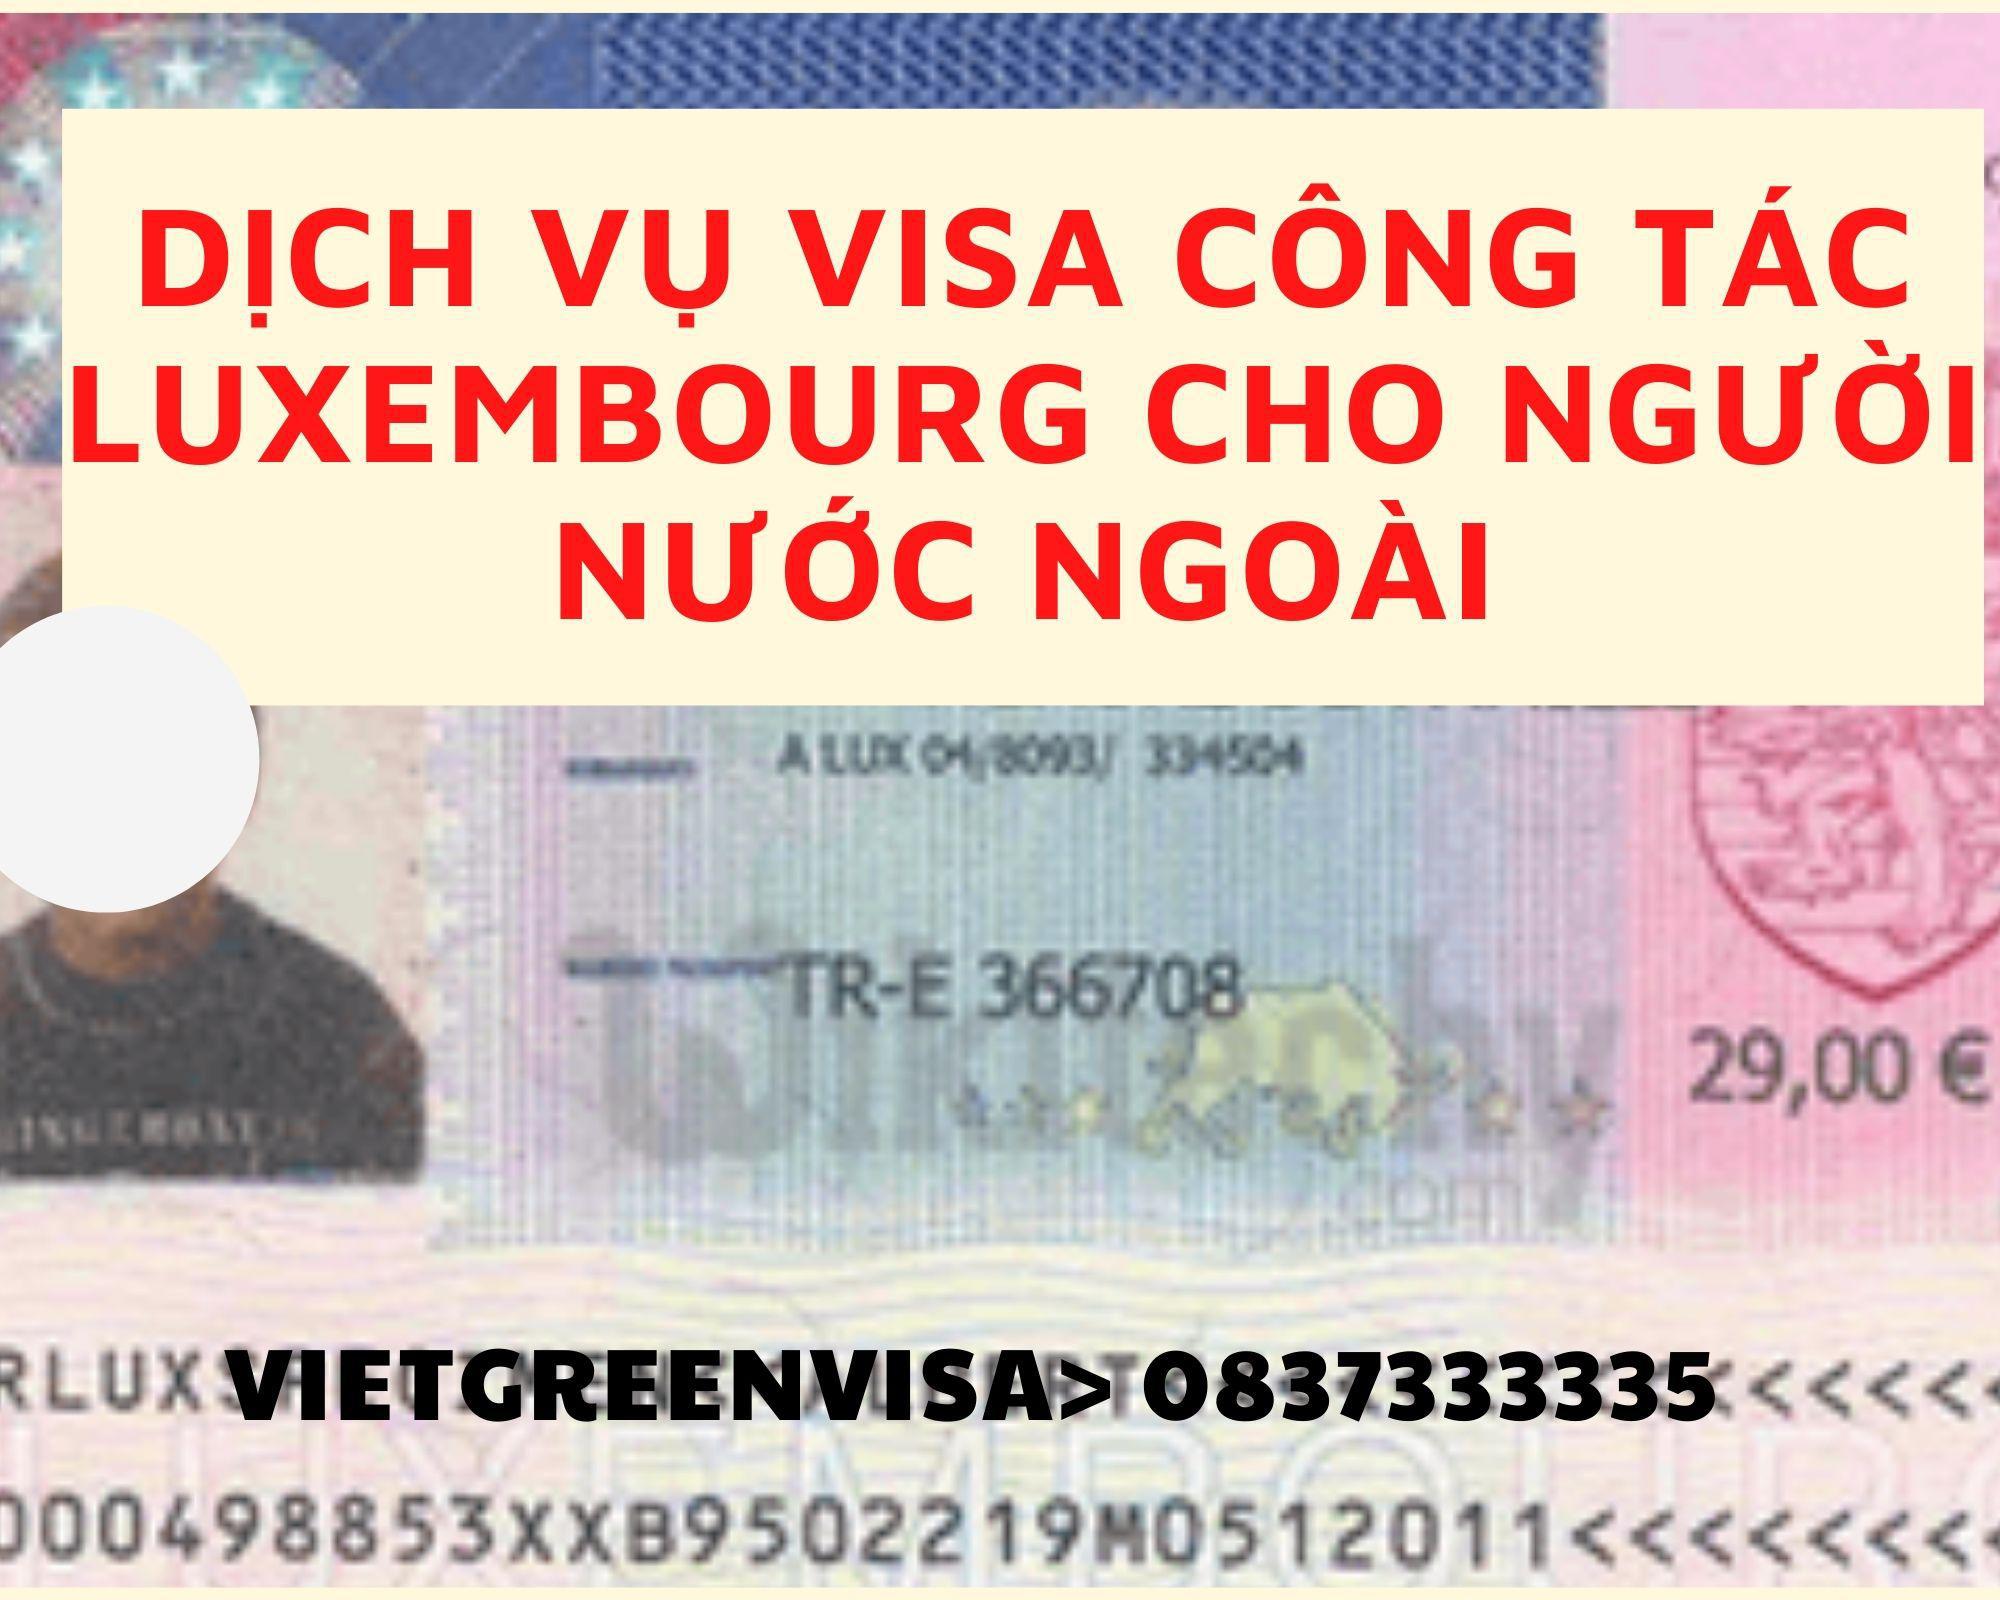 Làm visa công tác Luxembourg cho người nước ngoài nhanh chóng